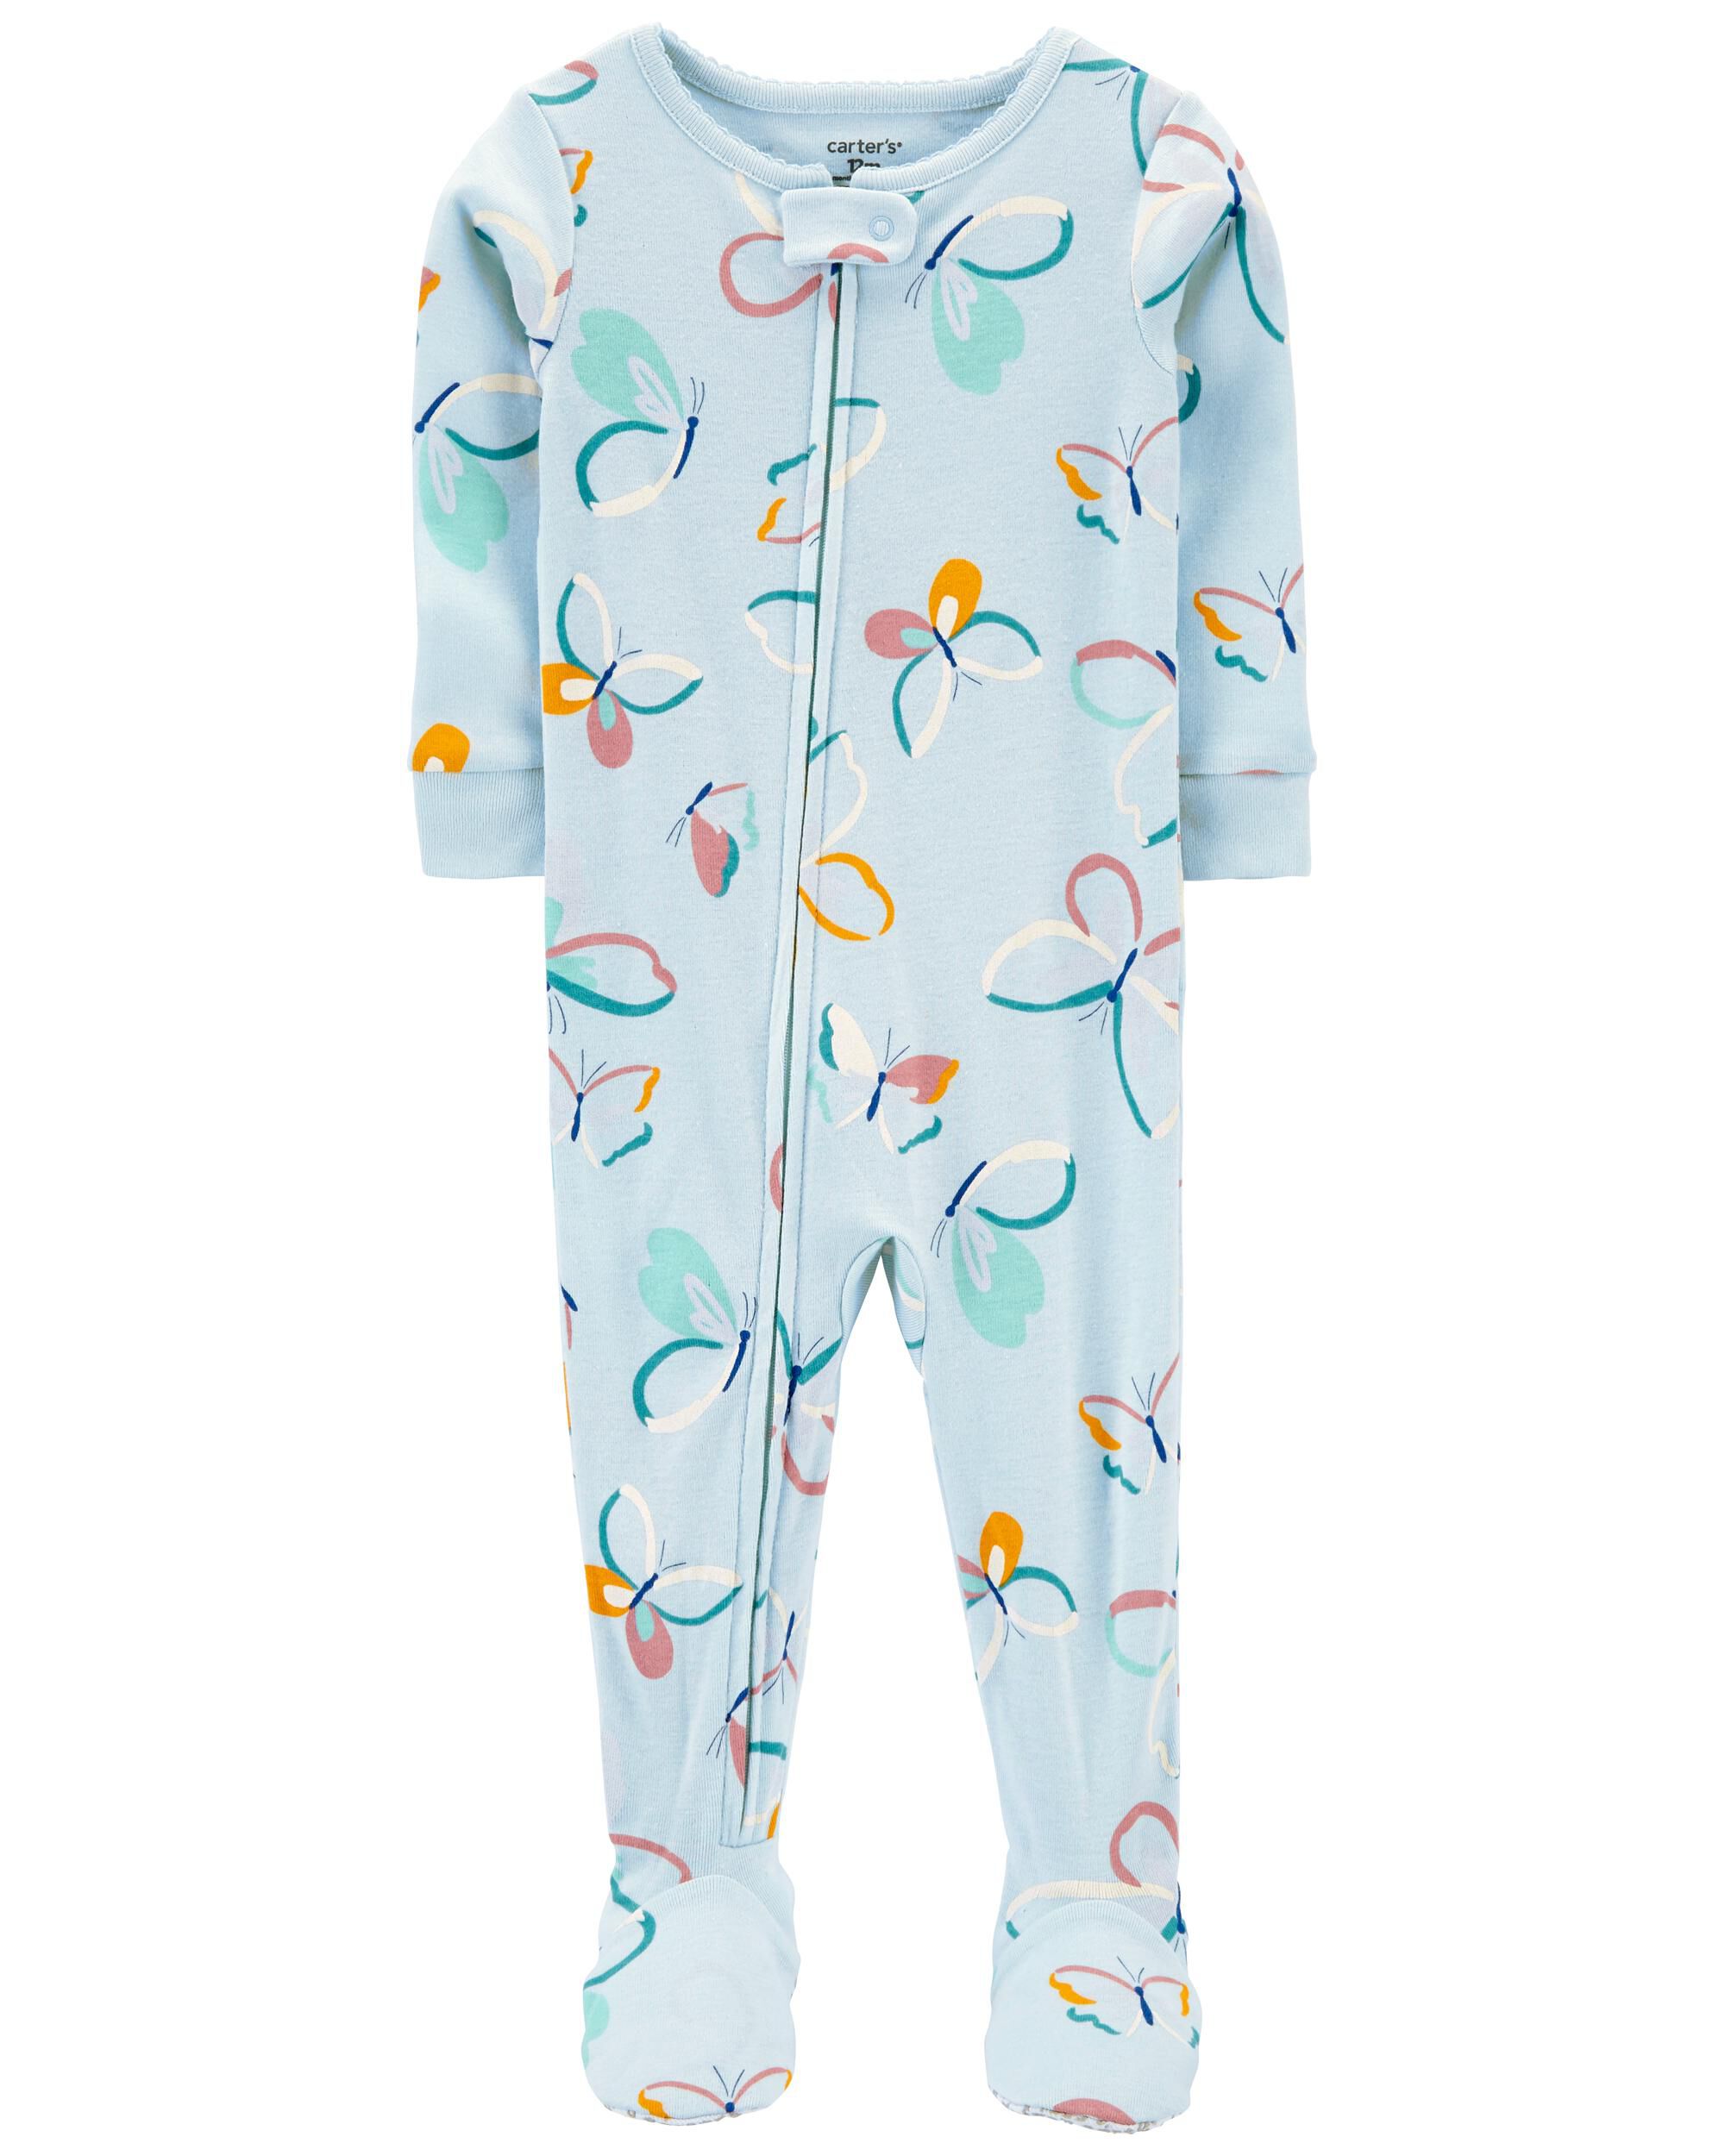 New Carter's Cloud Fleece Pajama PJs 1 pc Toddler Girl Sleeper Footie 